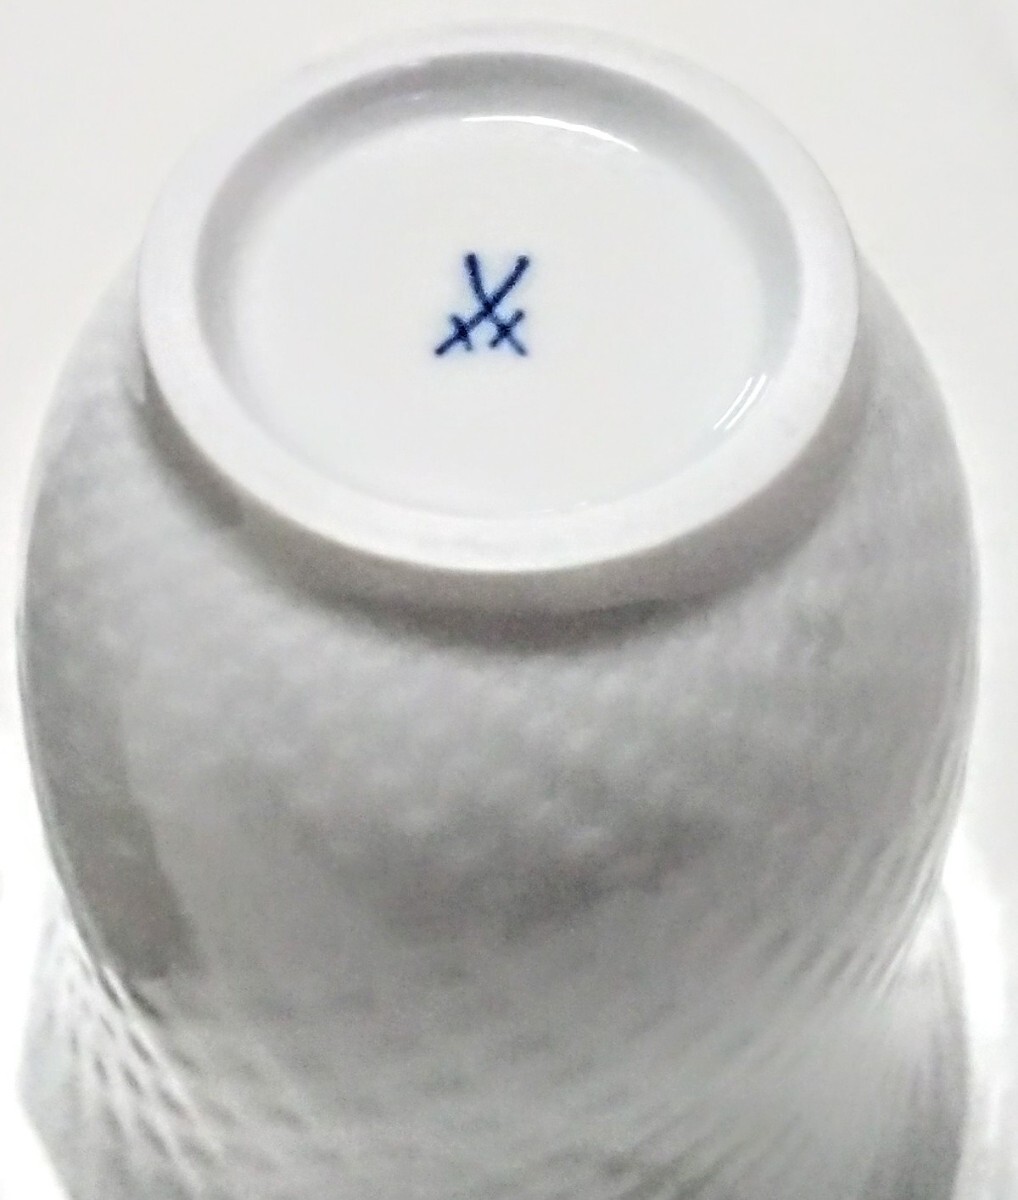 高級ブランド食器(Meissenマイセン 波の戯れ ホワイト ペア フリーカップ) 新品 未使用品_画像8